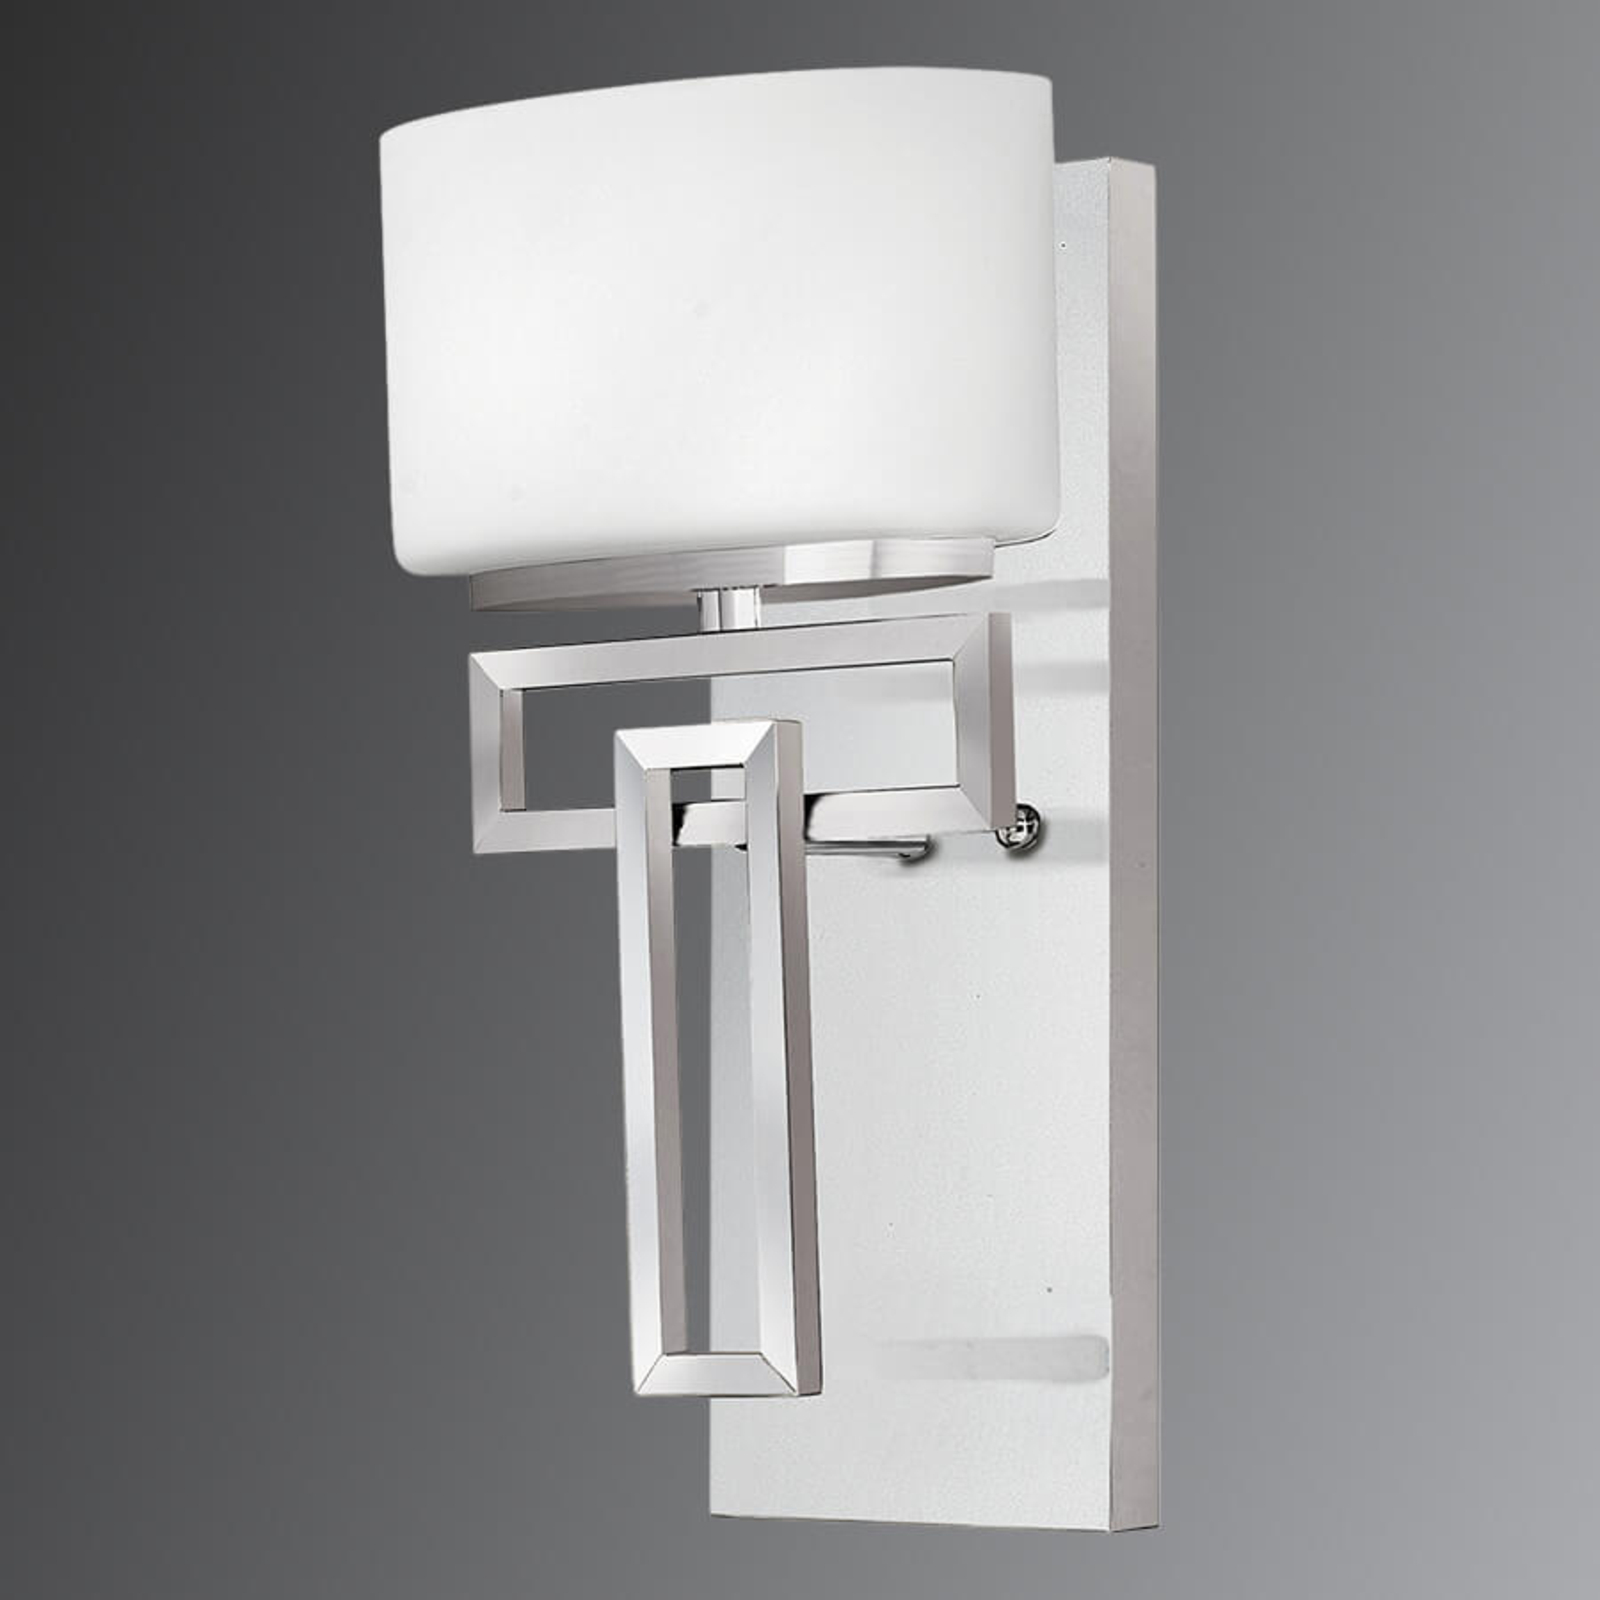 Rechtlijning vormgegeven badkamer wandlamp Lanza